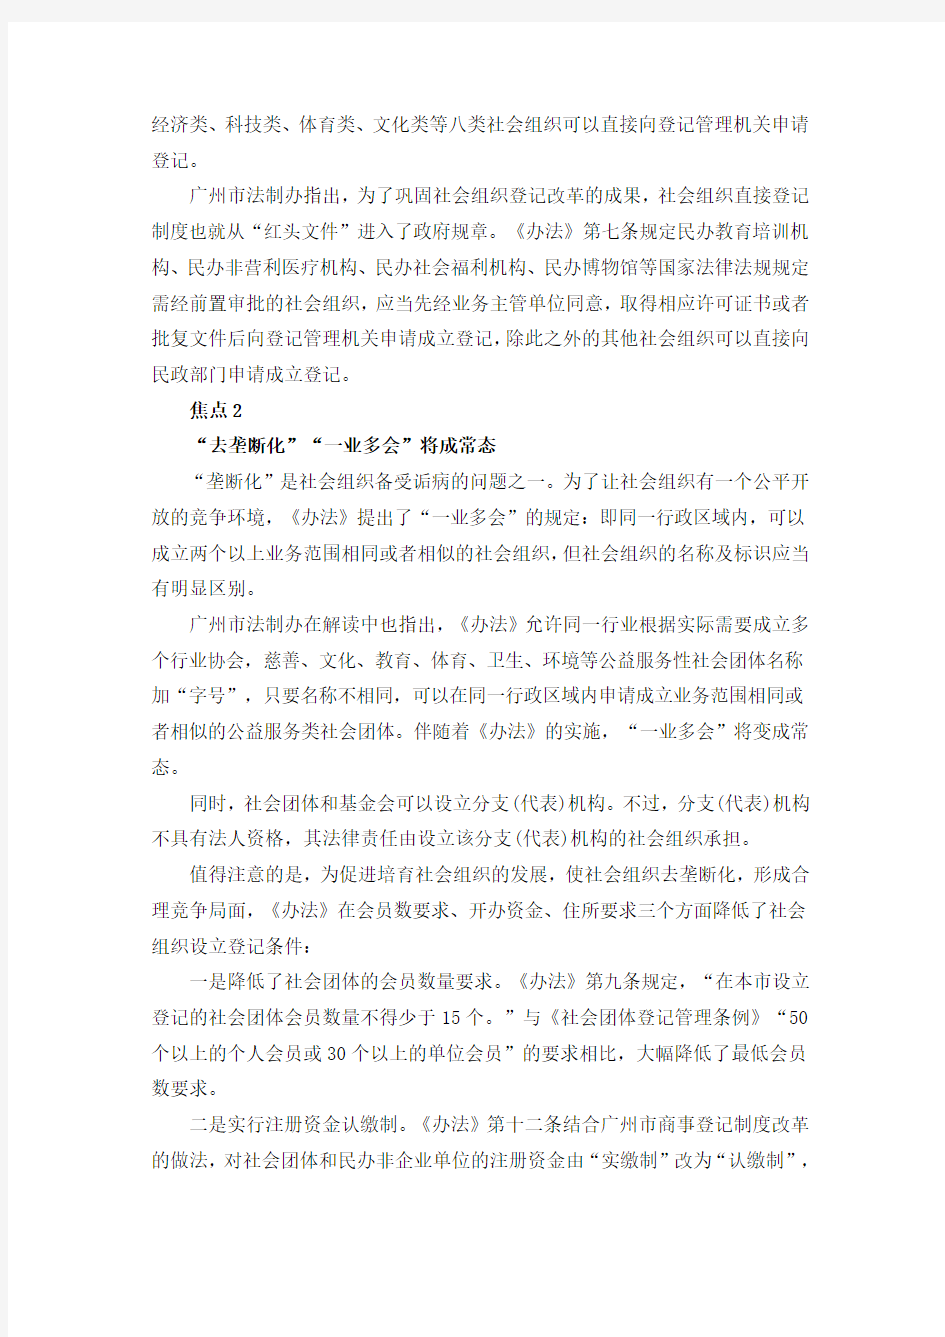 《广州市社会组织管理办法》解读及原文DOC